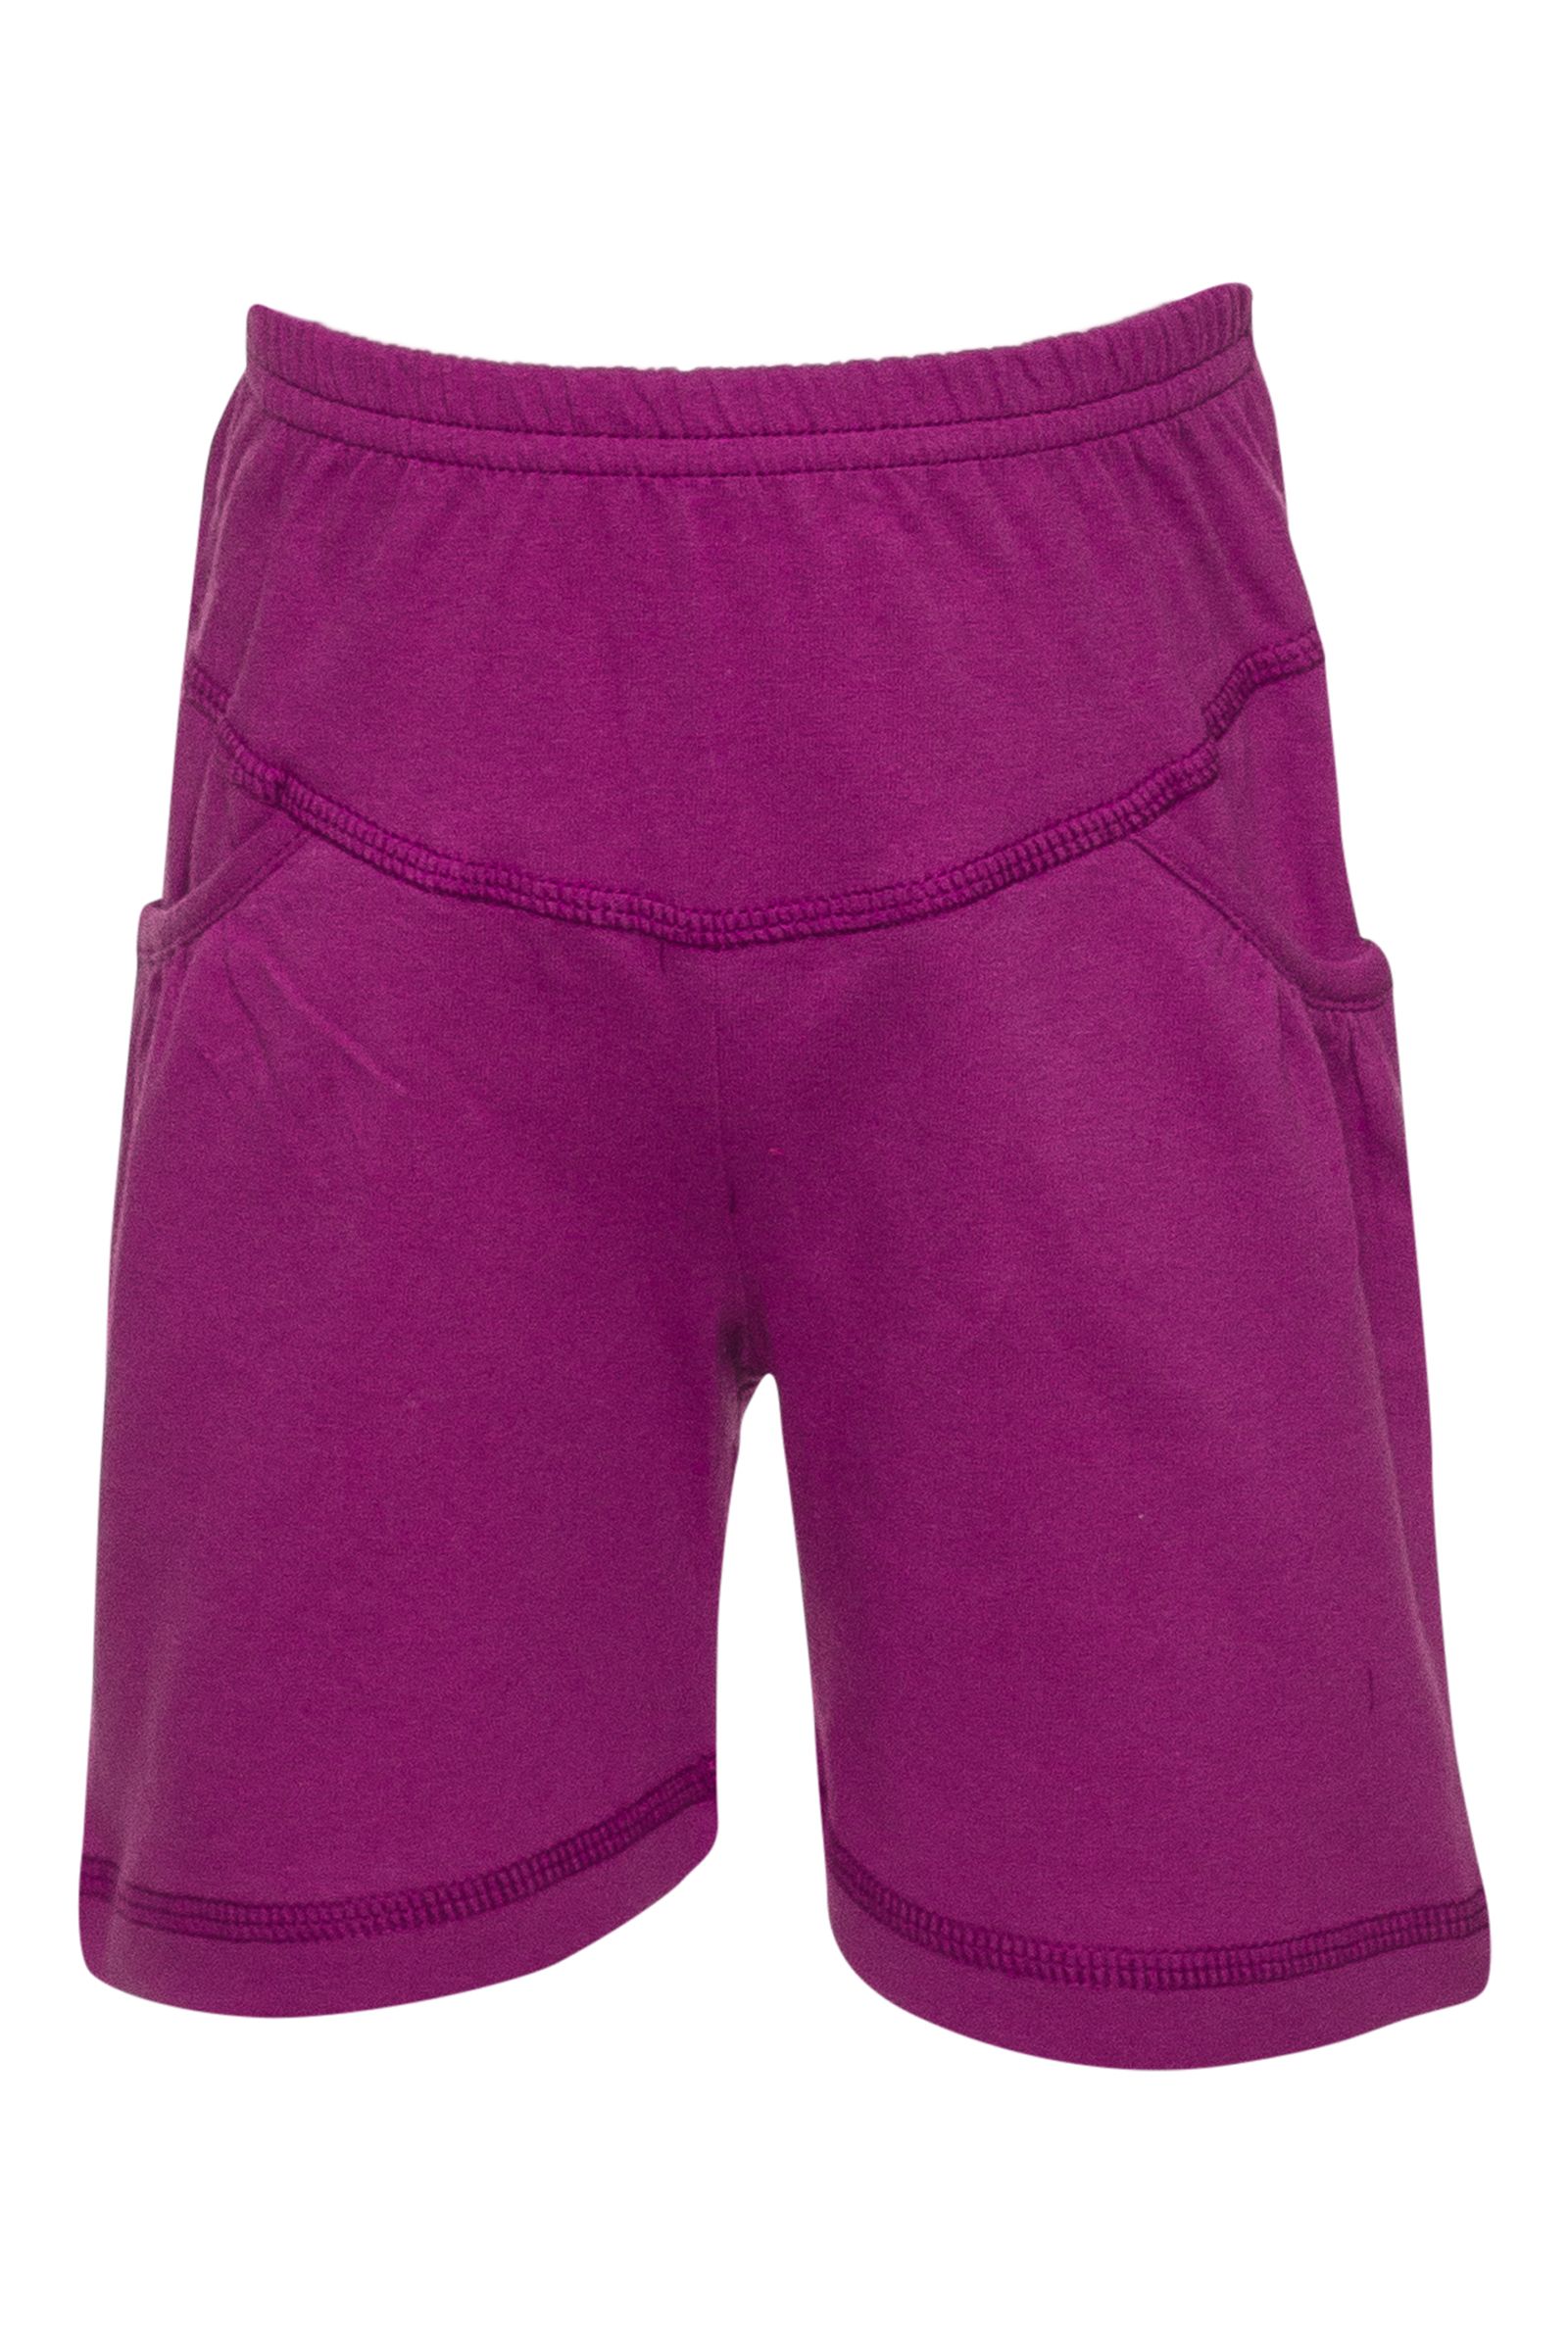 Шорты-ШР02-1154 оптом от производителя детской одежды 'Алёна'